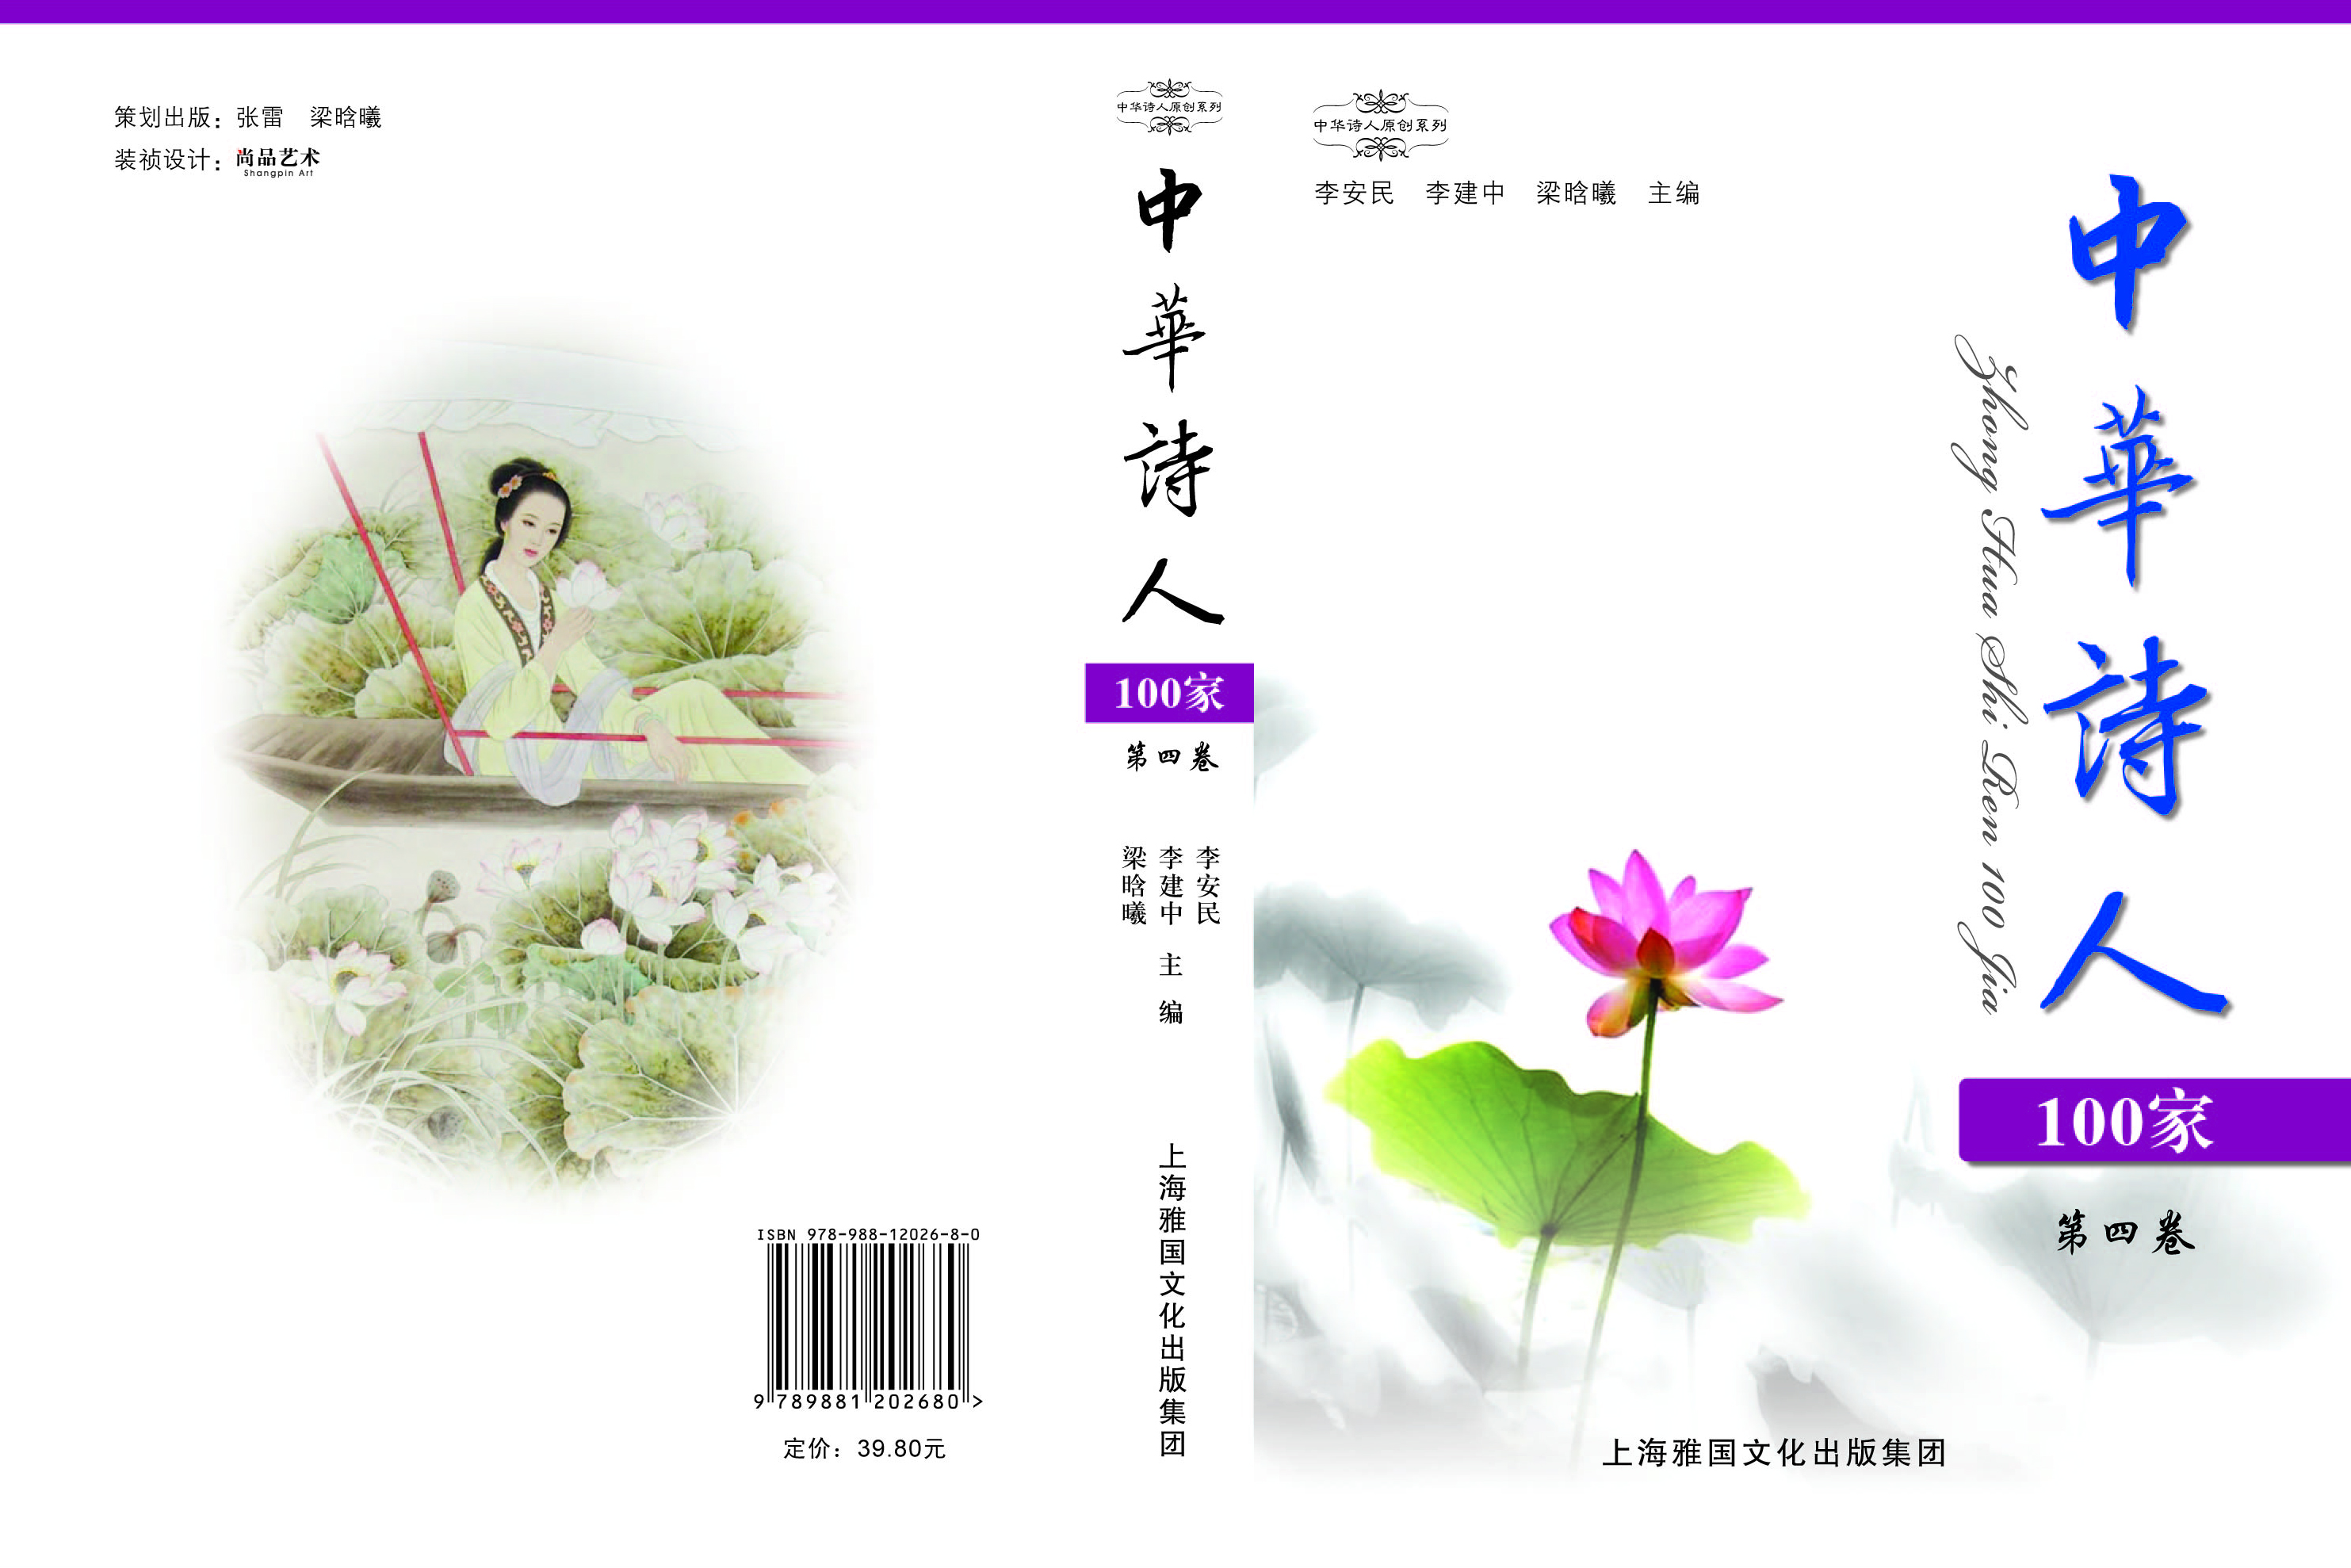 1《中华诗人100家》第4卷封面和封底.jpg